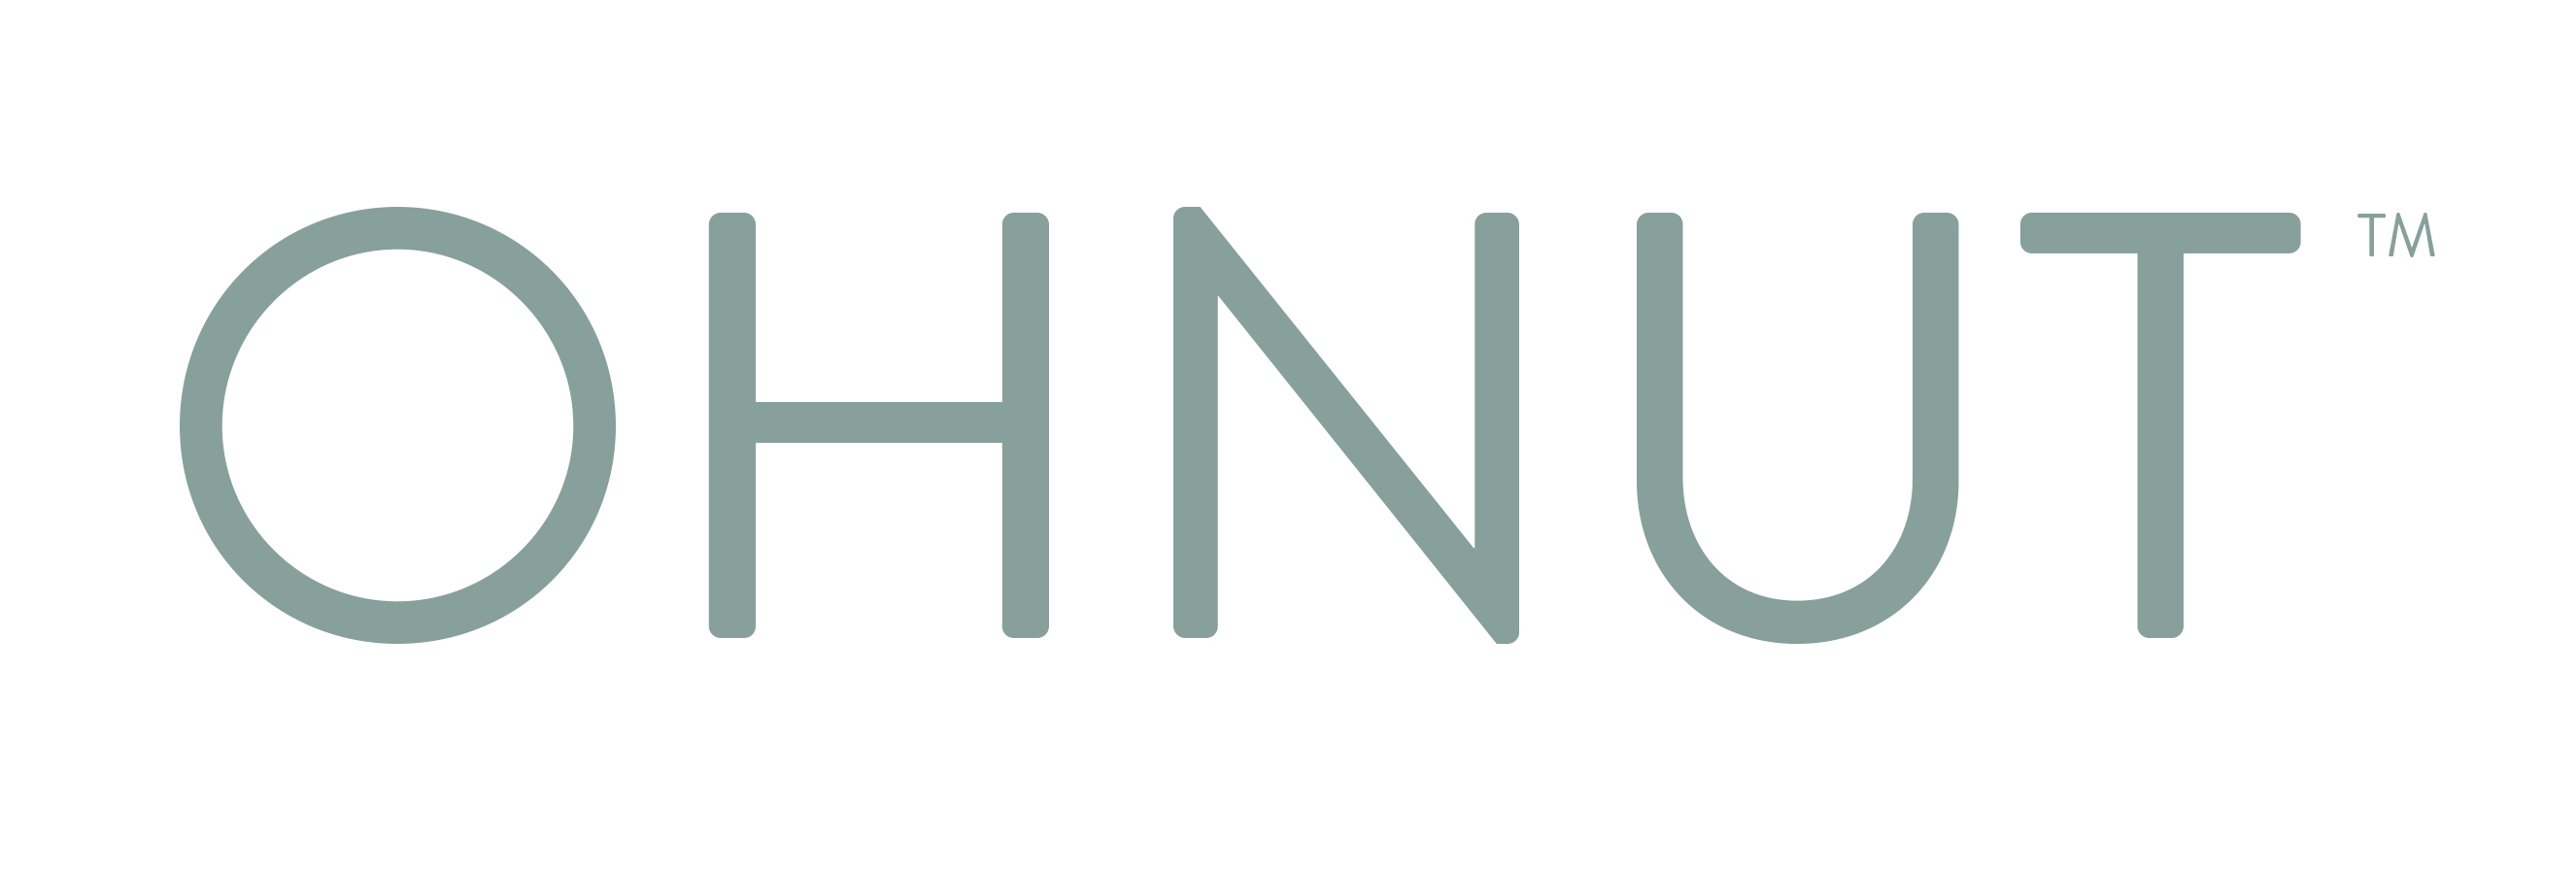 Ohnut Logo